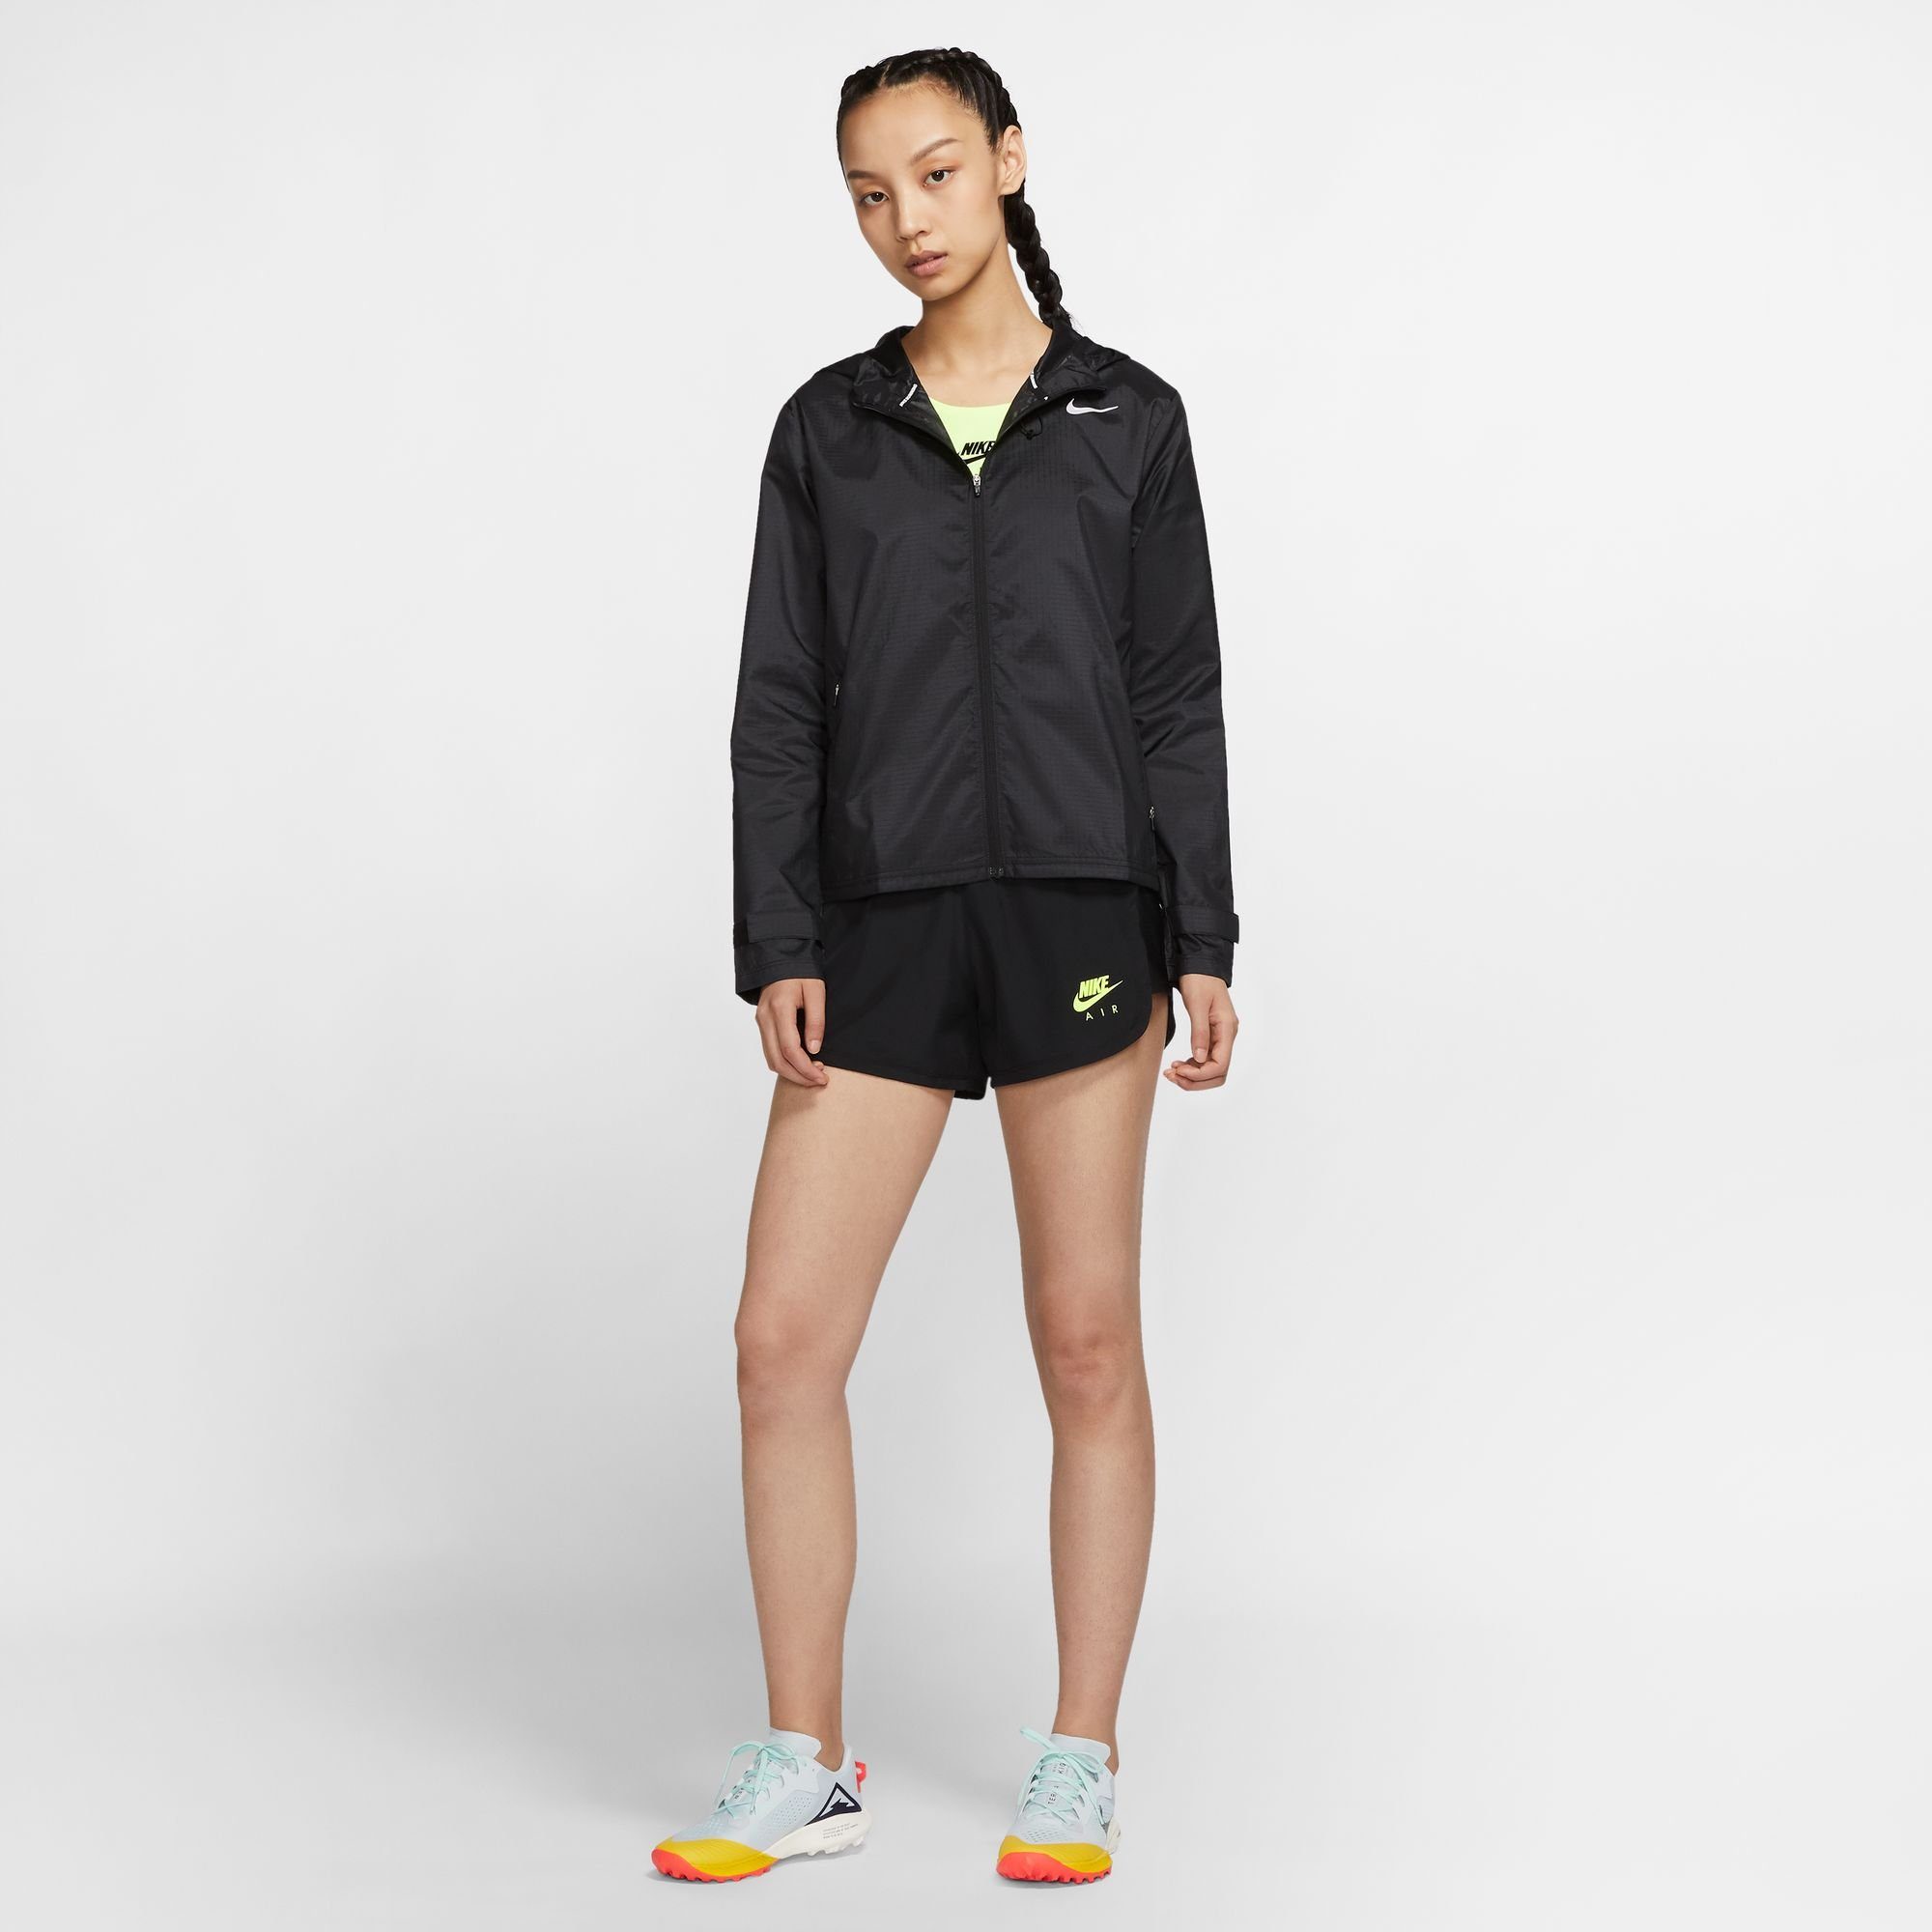 schwarz Essential Jacket Laufjacke Nike Running Women's